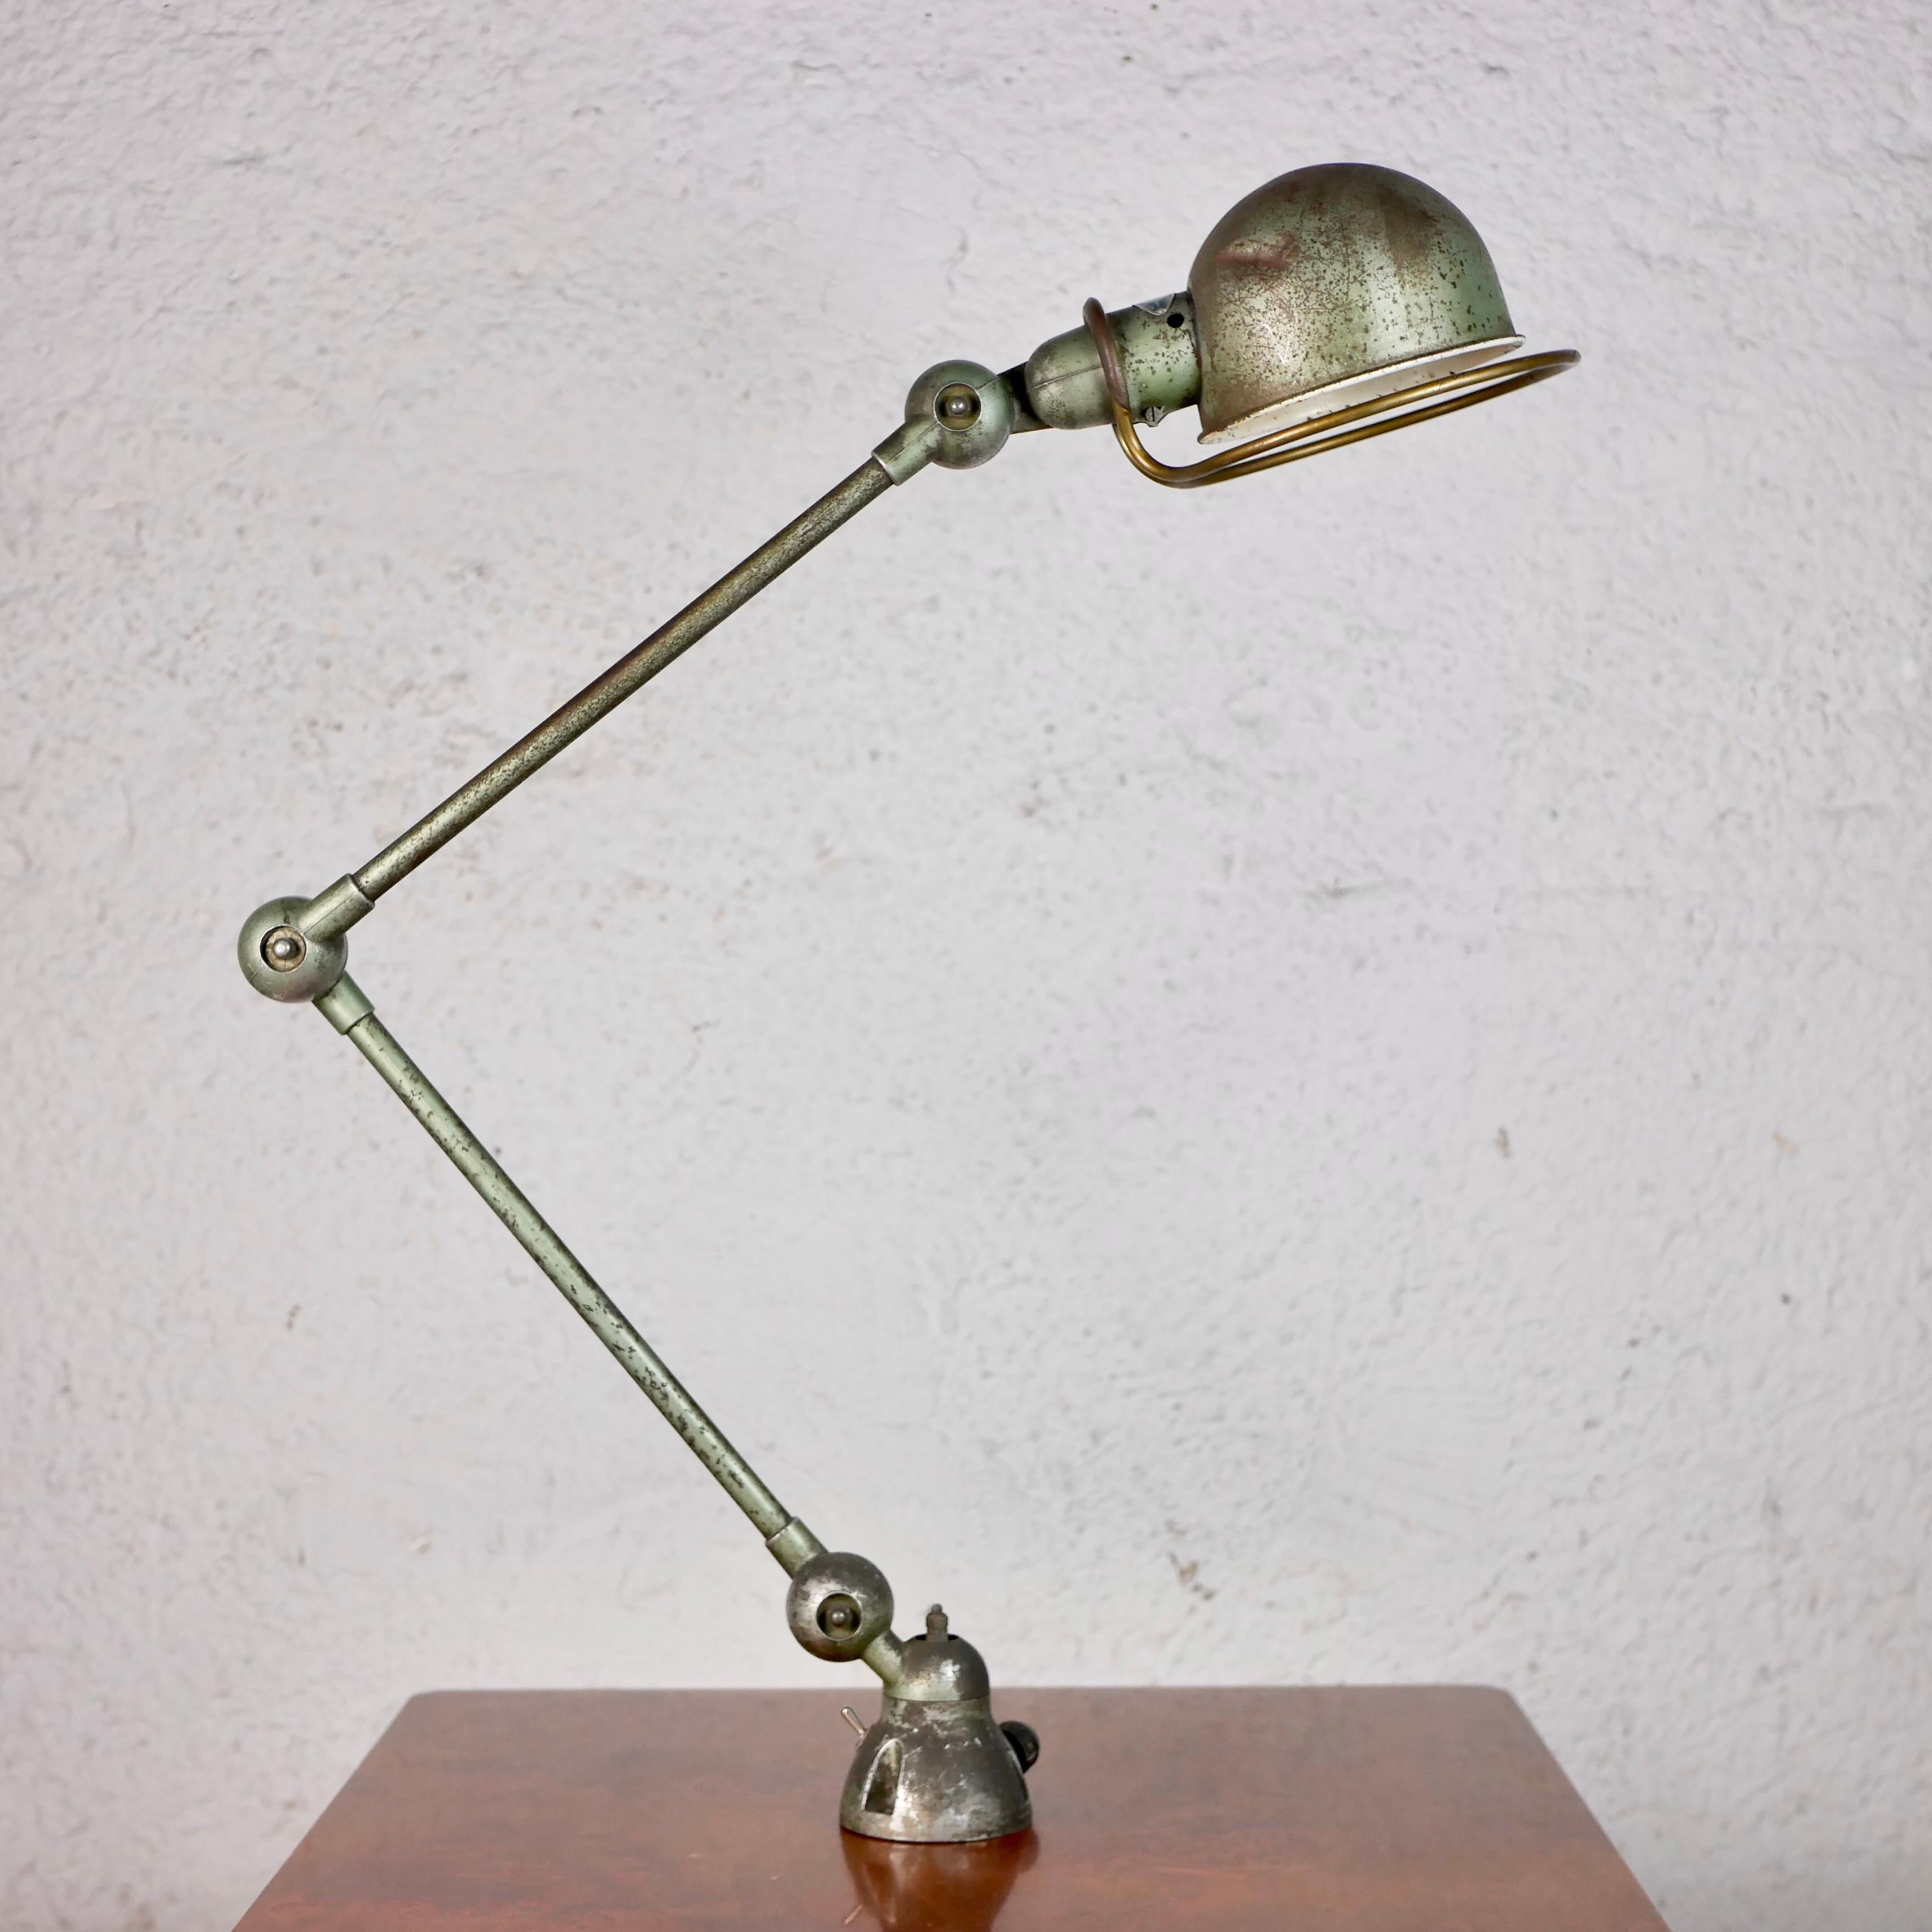 Célèbre lampe Jieldé en vert vespa, conçue par Jean-Louis Domecq (JLD) dans les années 1950 à Lyon, en France. 
Très belle patine, fabrication de haute qualité, peut être fixé sur un bureau ou au mur.
Très robuste.
Avec son étiquette rivetée.
Nous